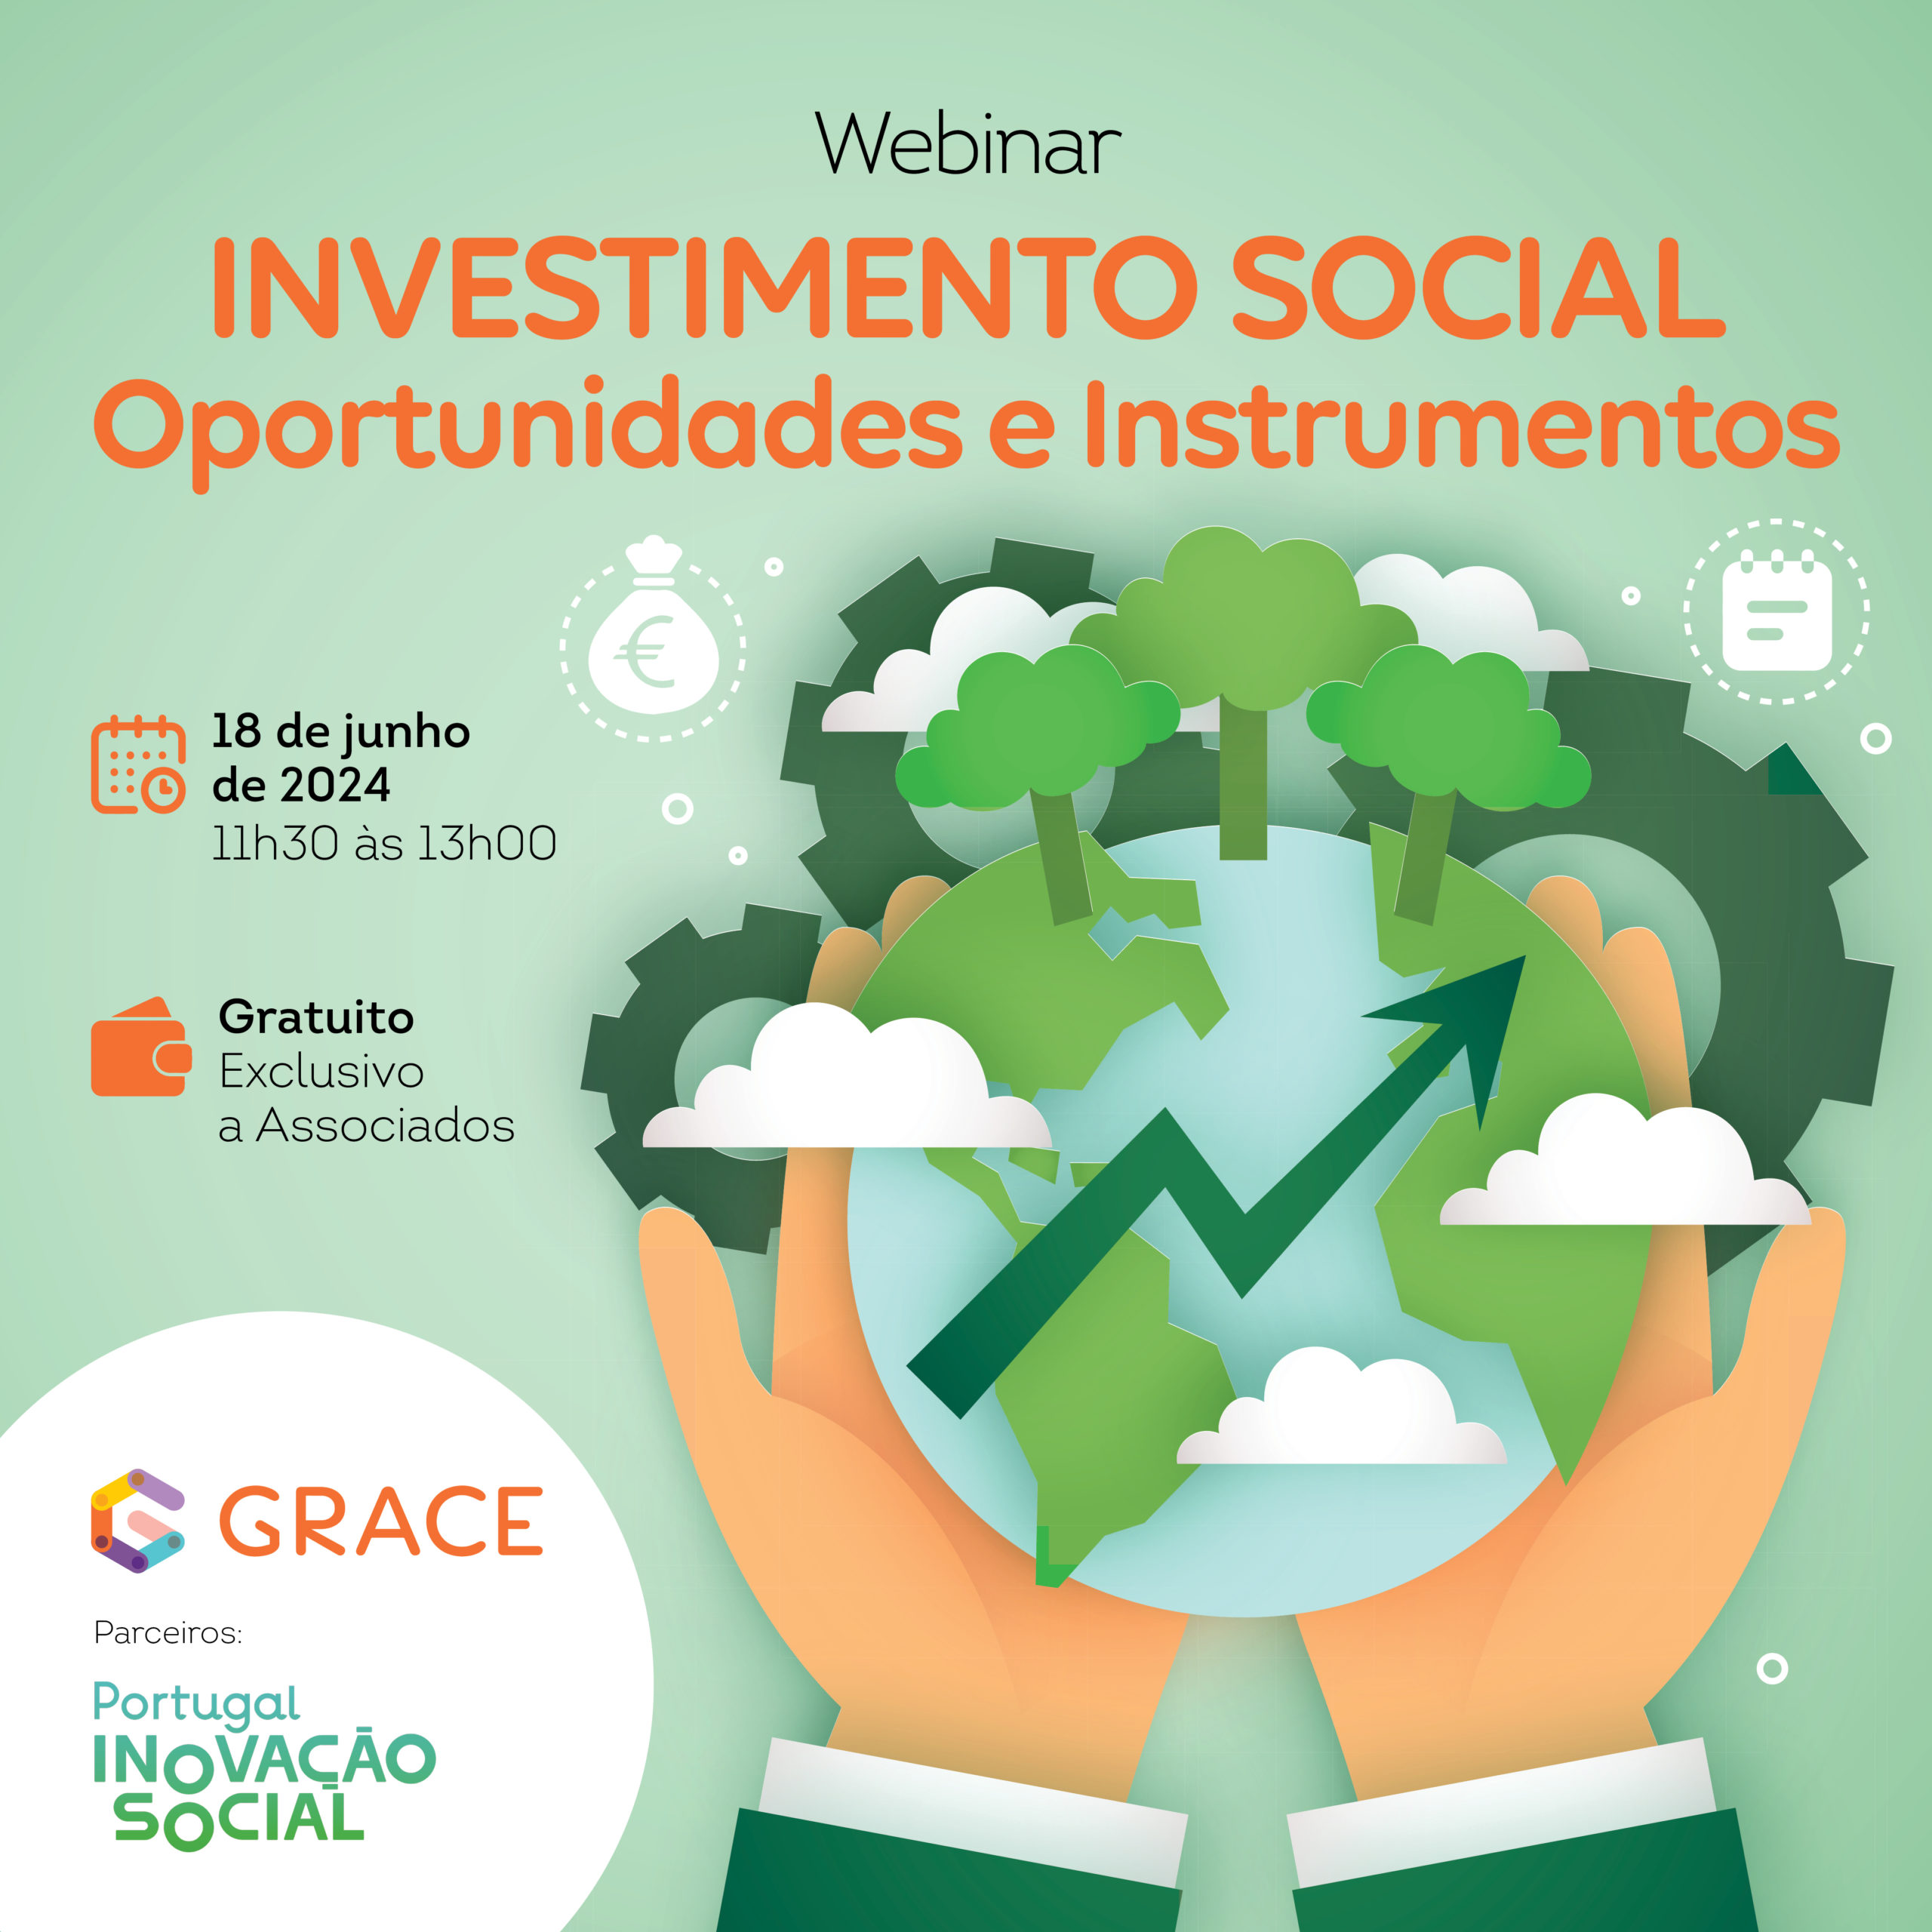 Webinar Investimento Social: Oportunidades e Instrumentos